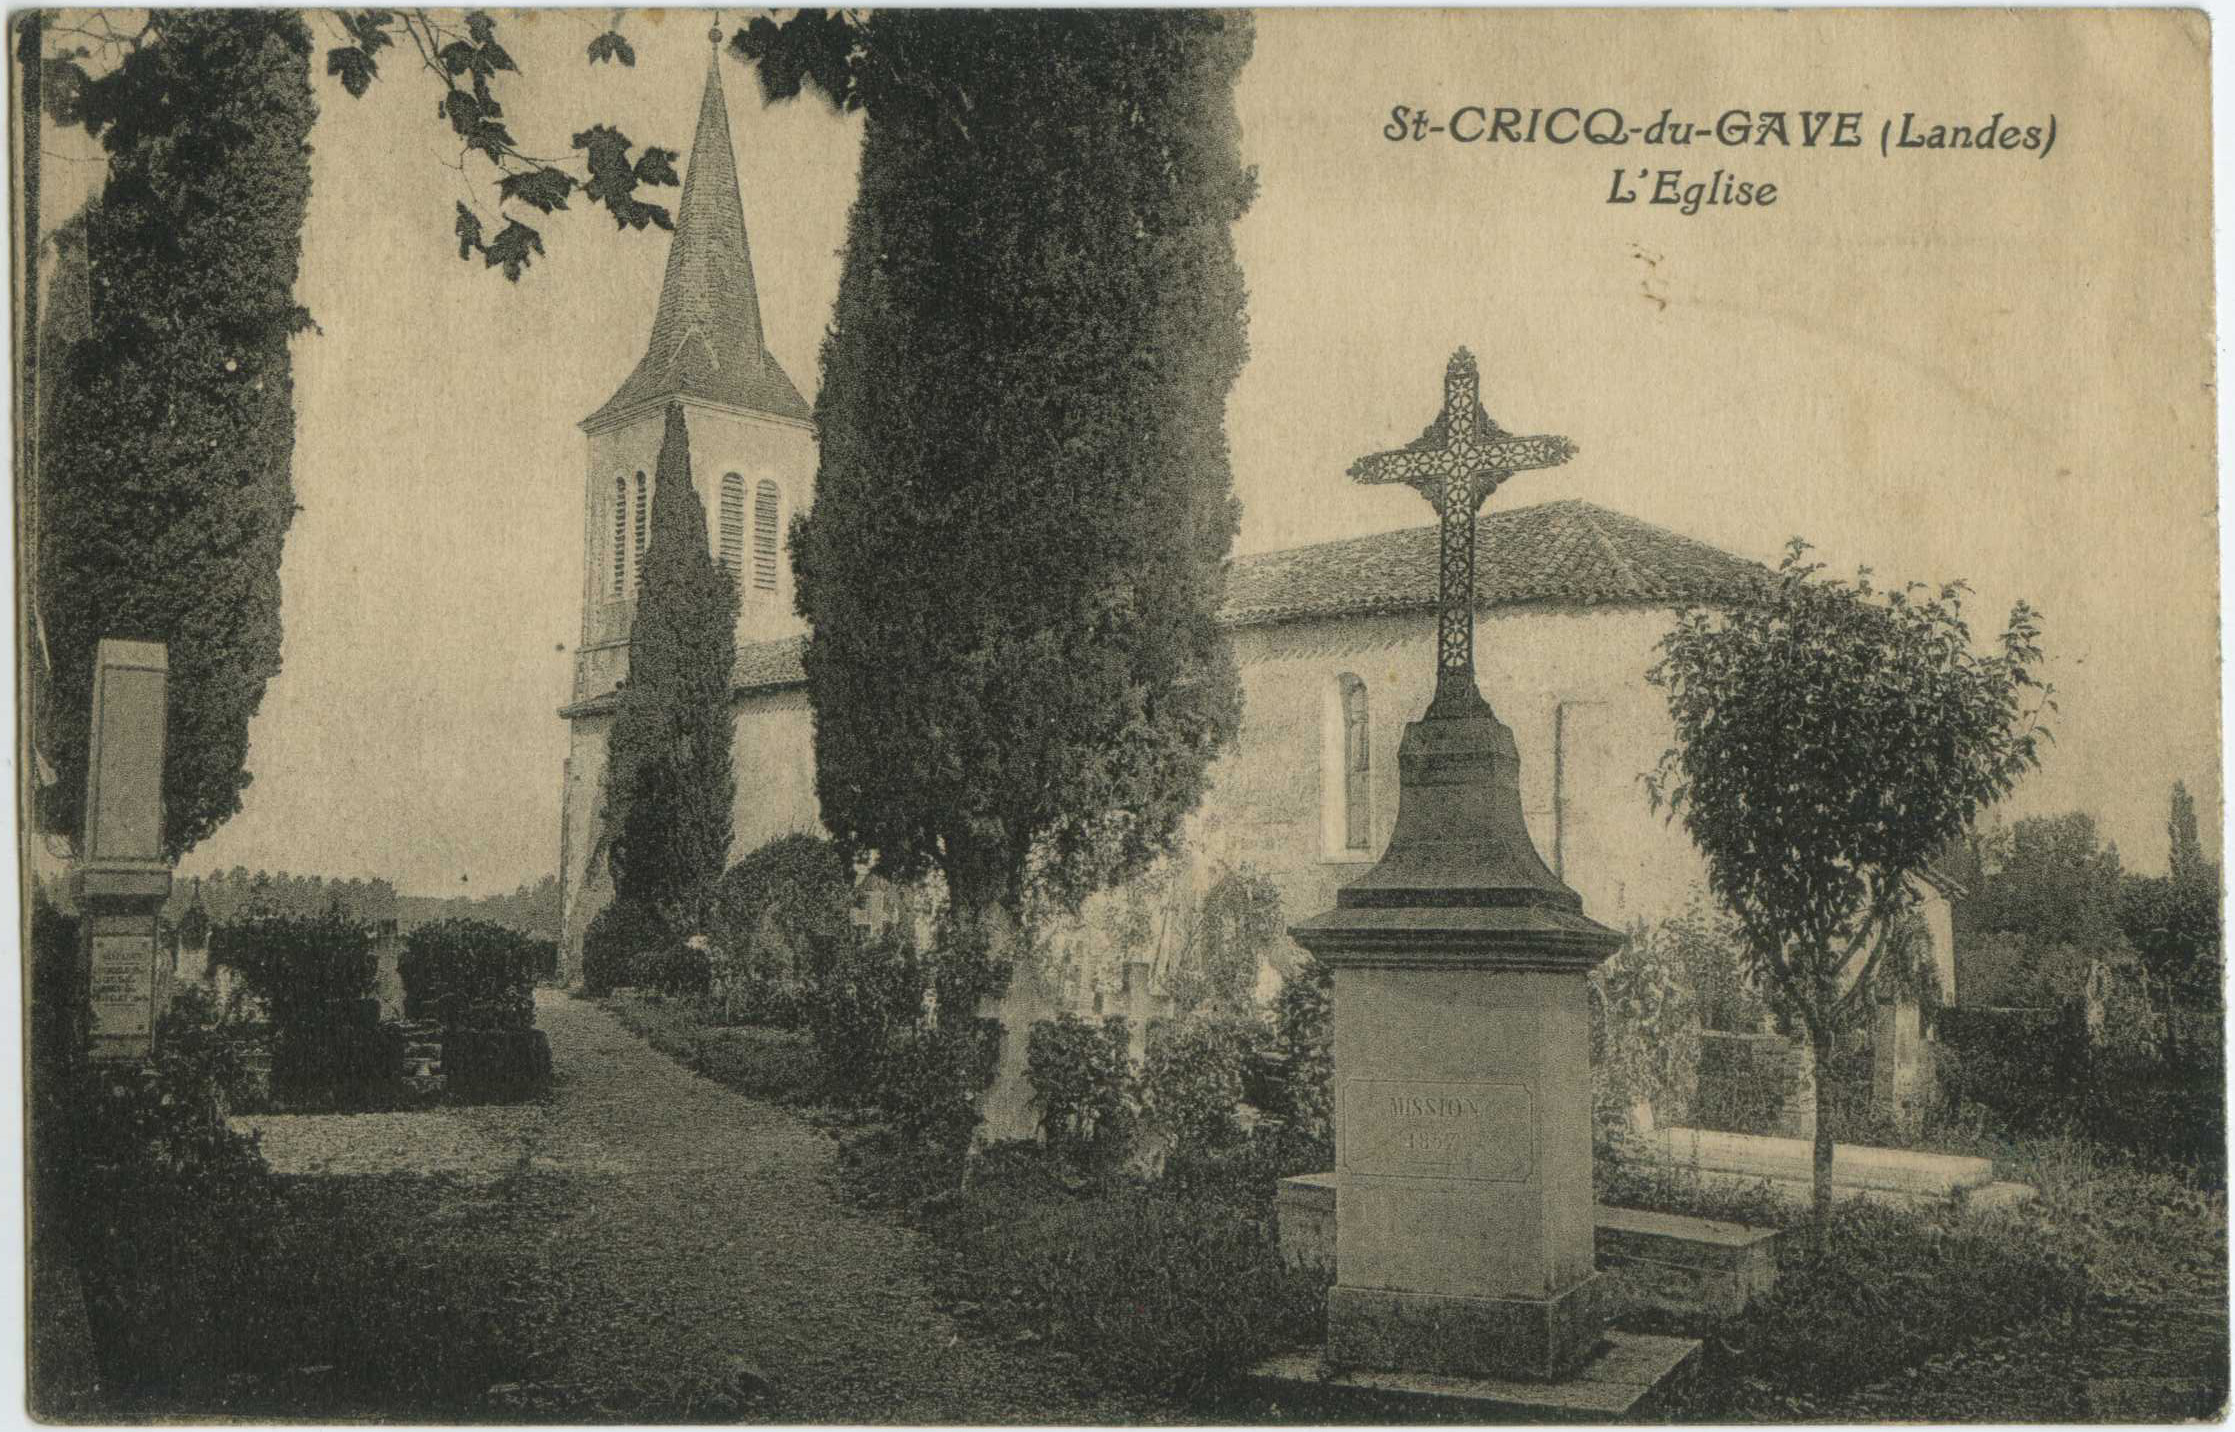 Saint-Cricq-du-Gave - L'Eglise